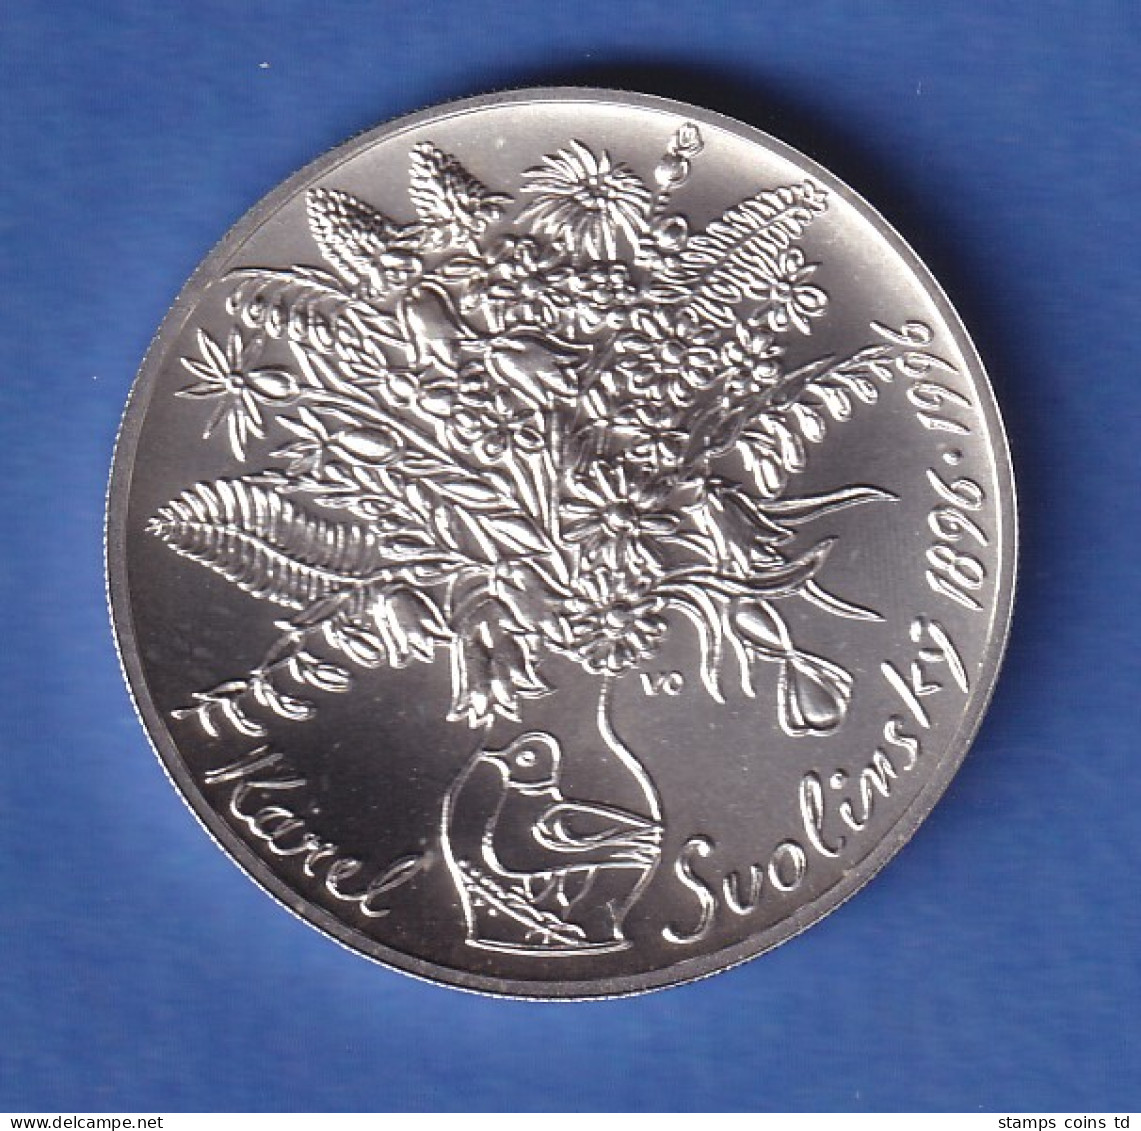 Tschechien 1996 Silbermünze 200 Kronen 100. Geburtstag Von Karel Svolinský Stg - Tsjechië